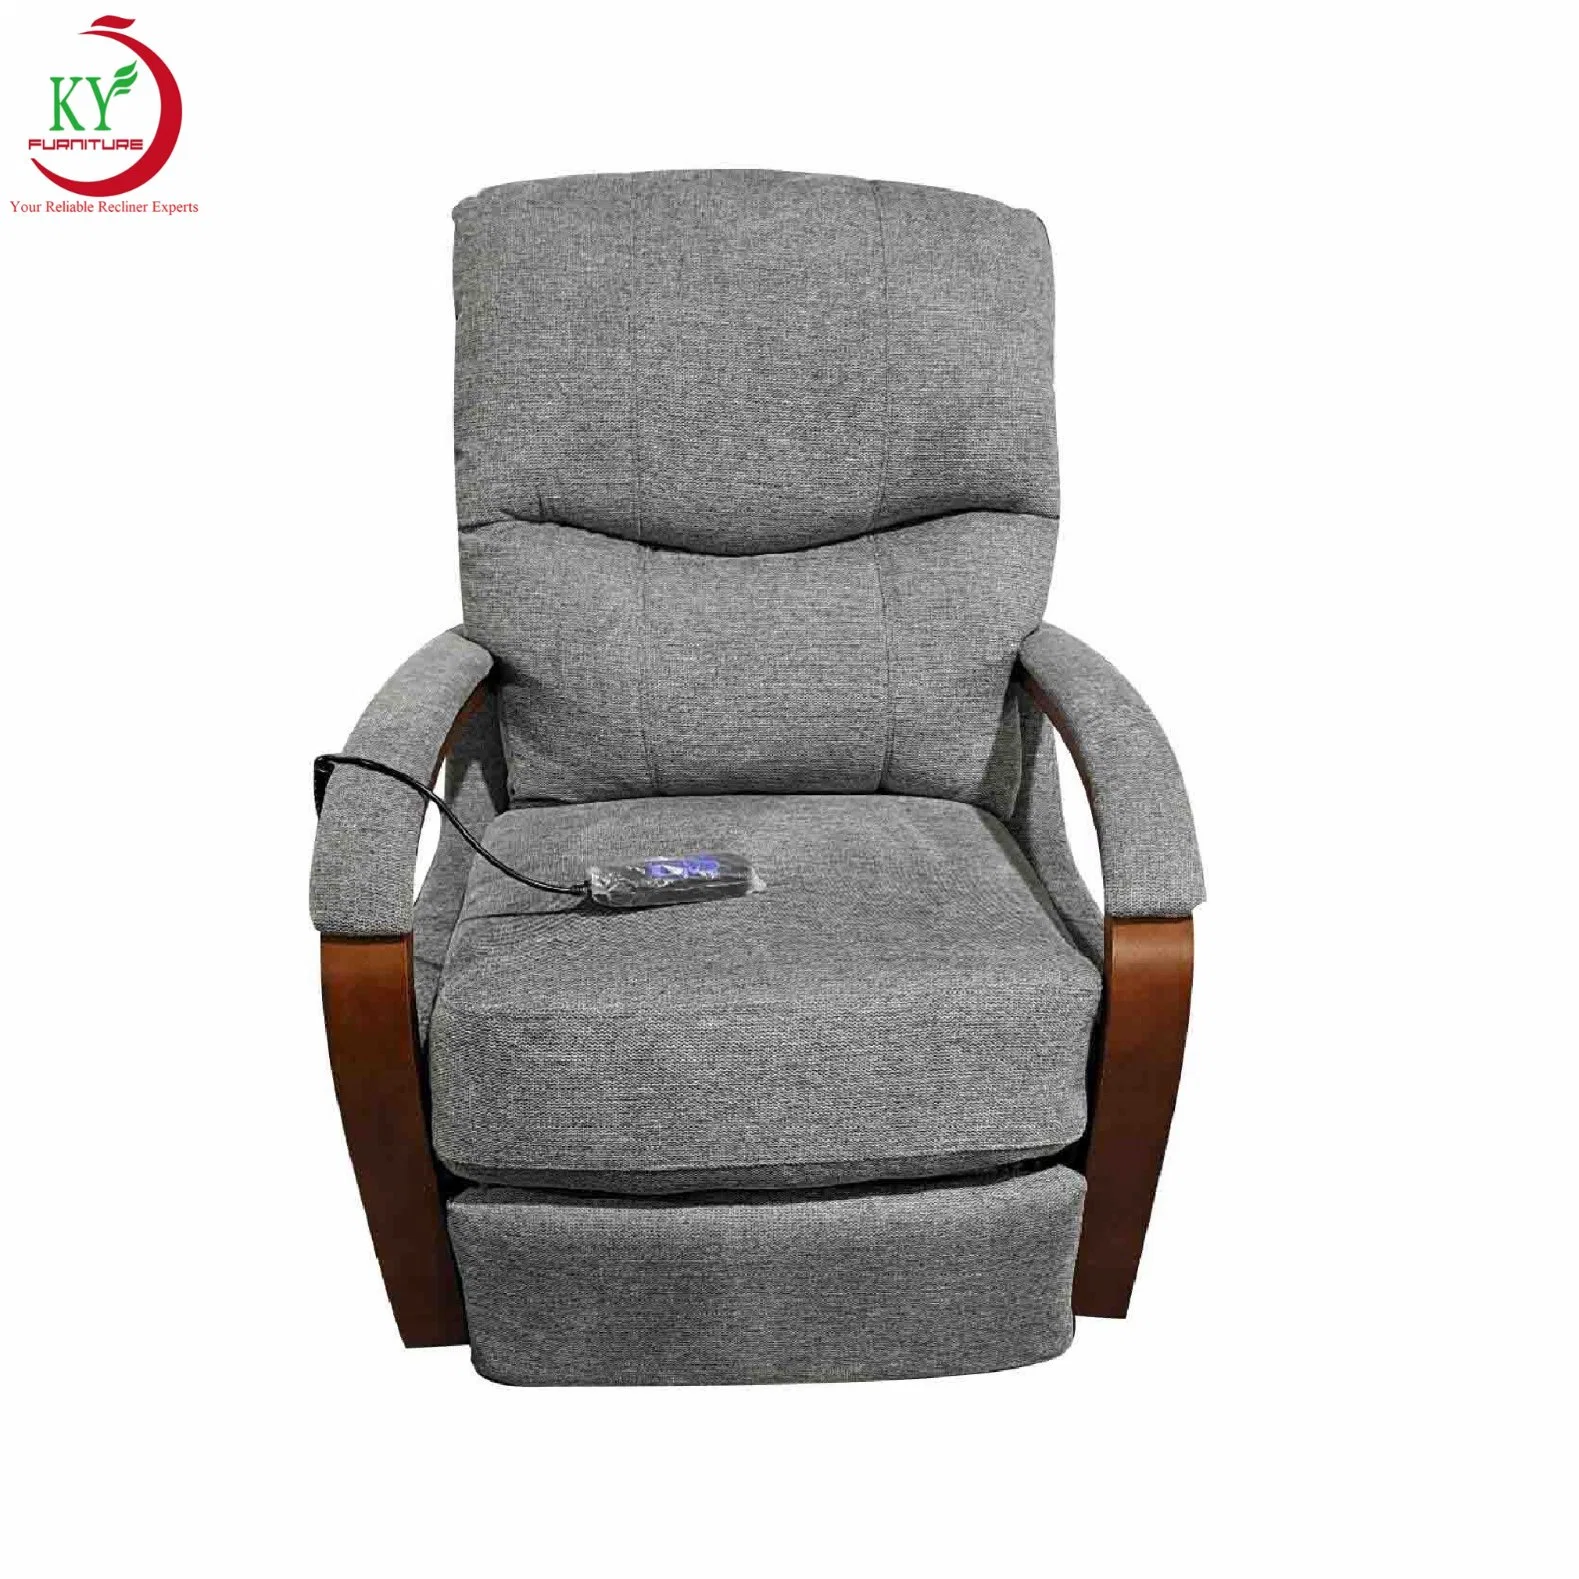 Jky Мебель Air Leather подъемный подъемник Recliner кресло с. Функция массажа для пожилых людей и инвалидов